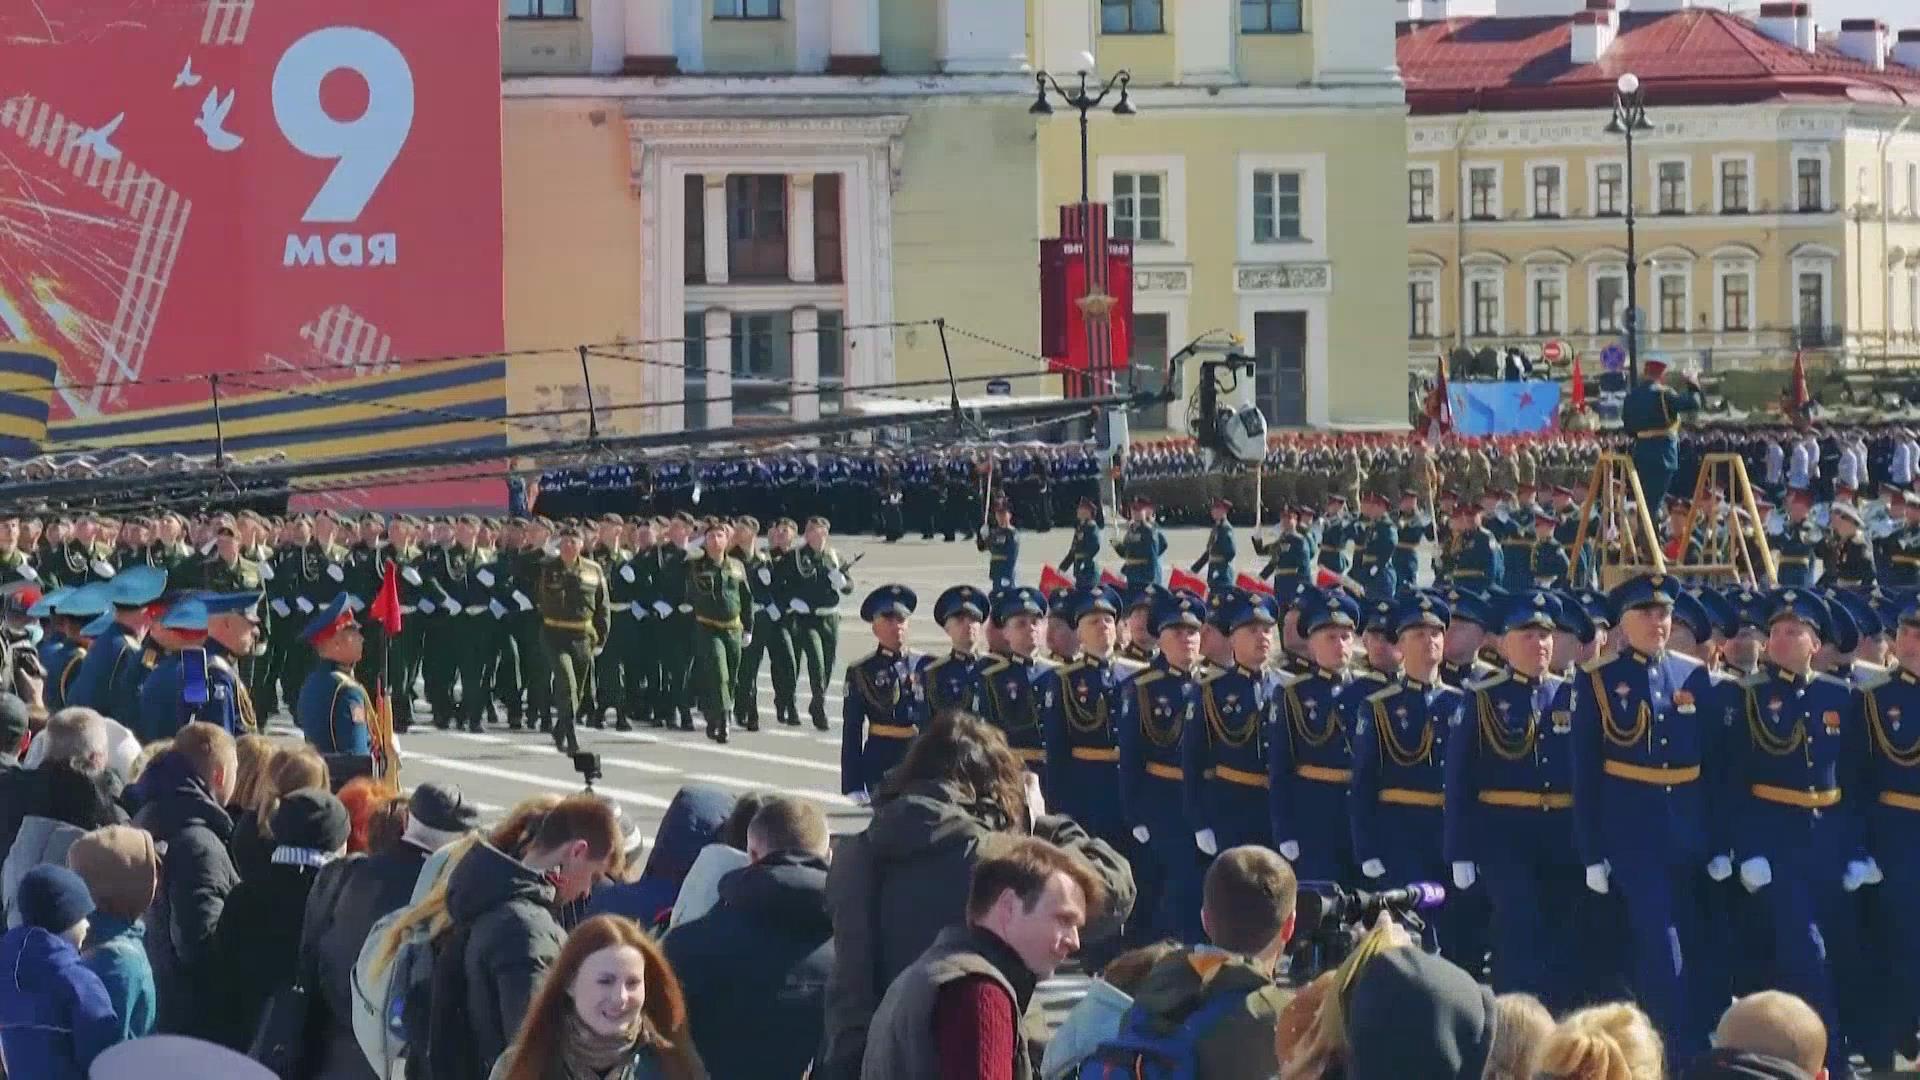 俄罗斯举行胜利节阅兵彩排 多款地面装备插着红旗亮相（6）-千龙网·中国首都网